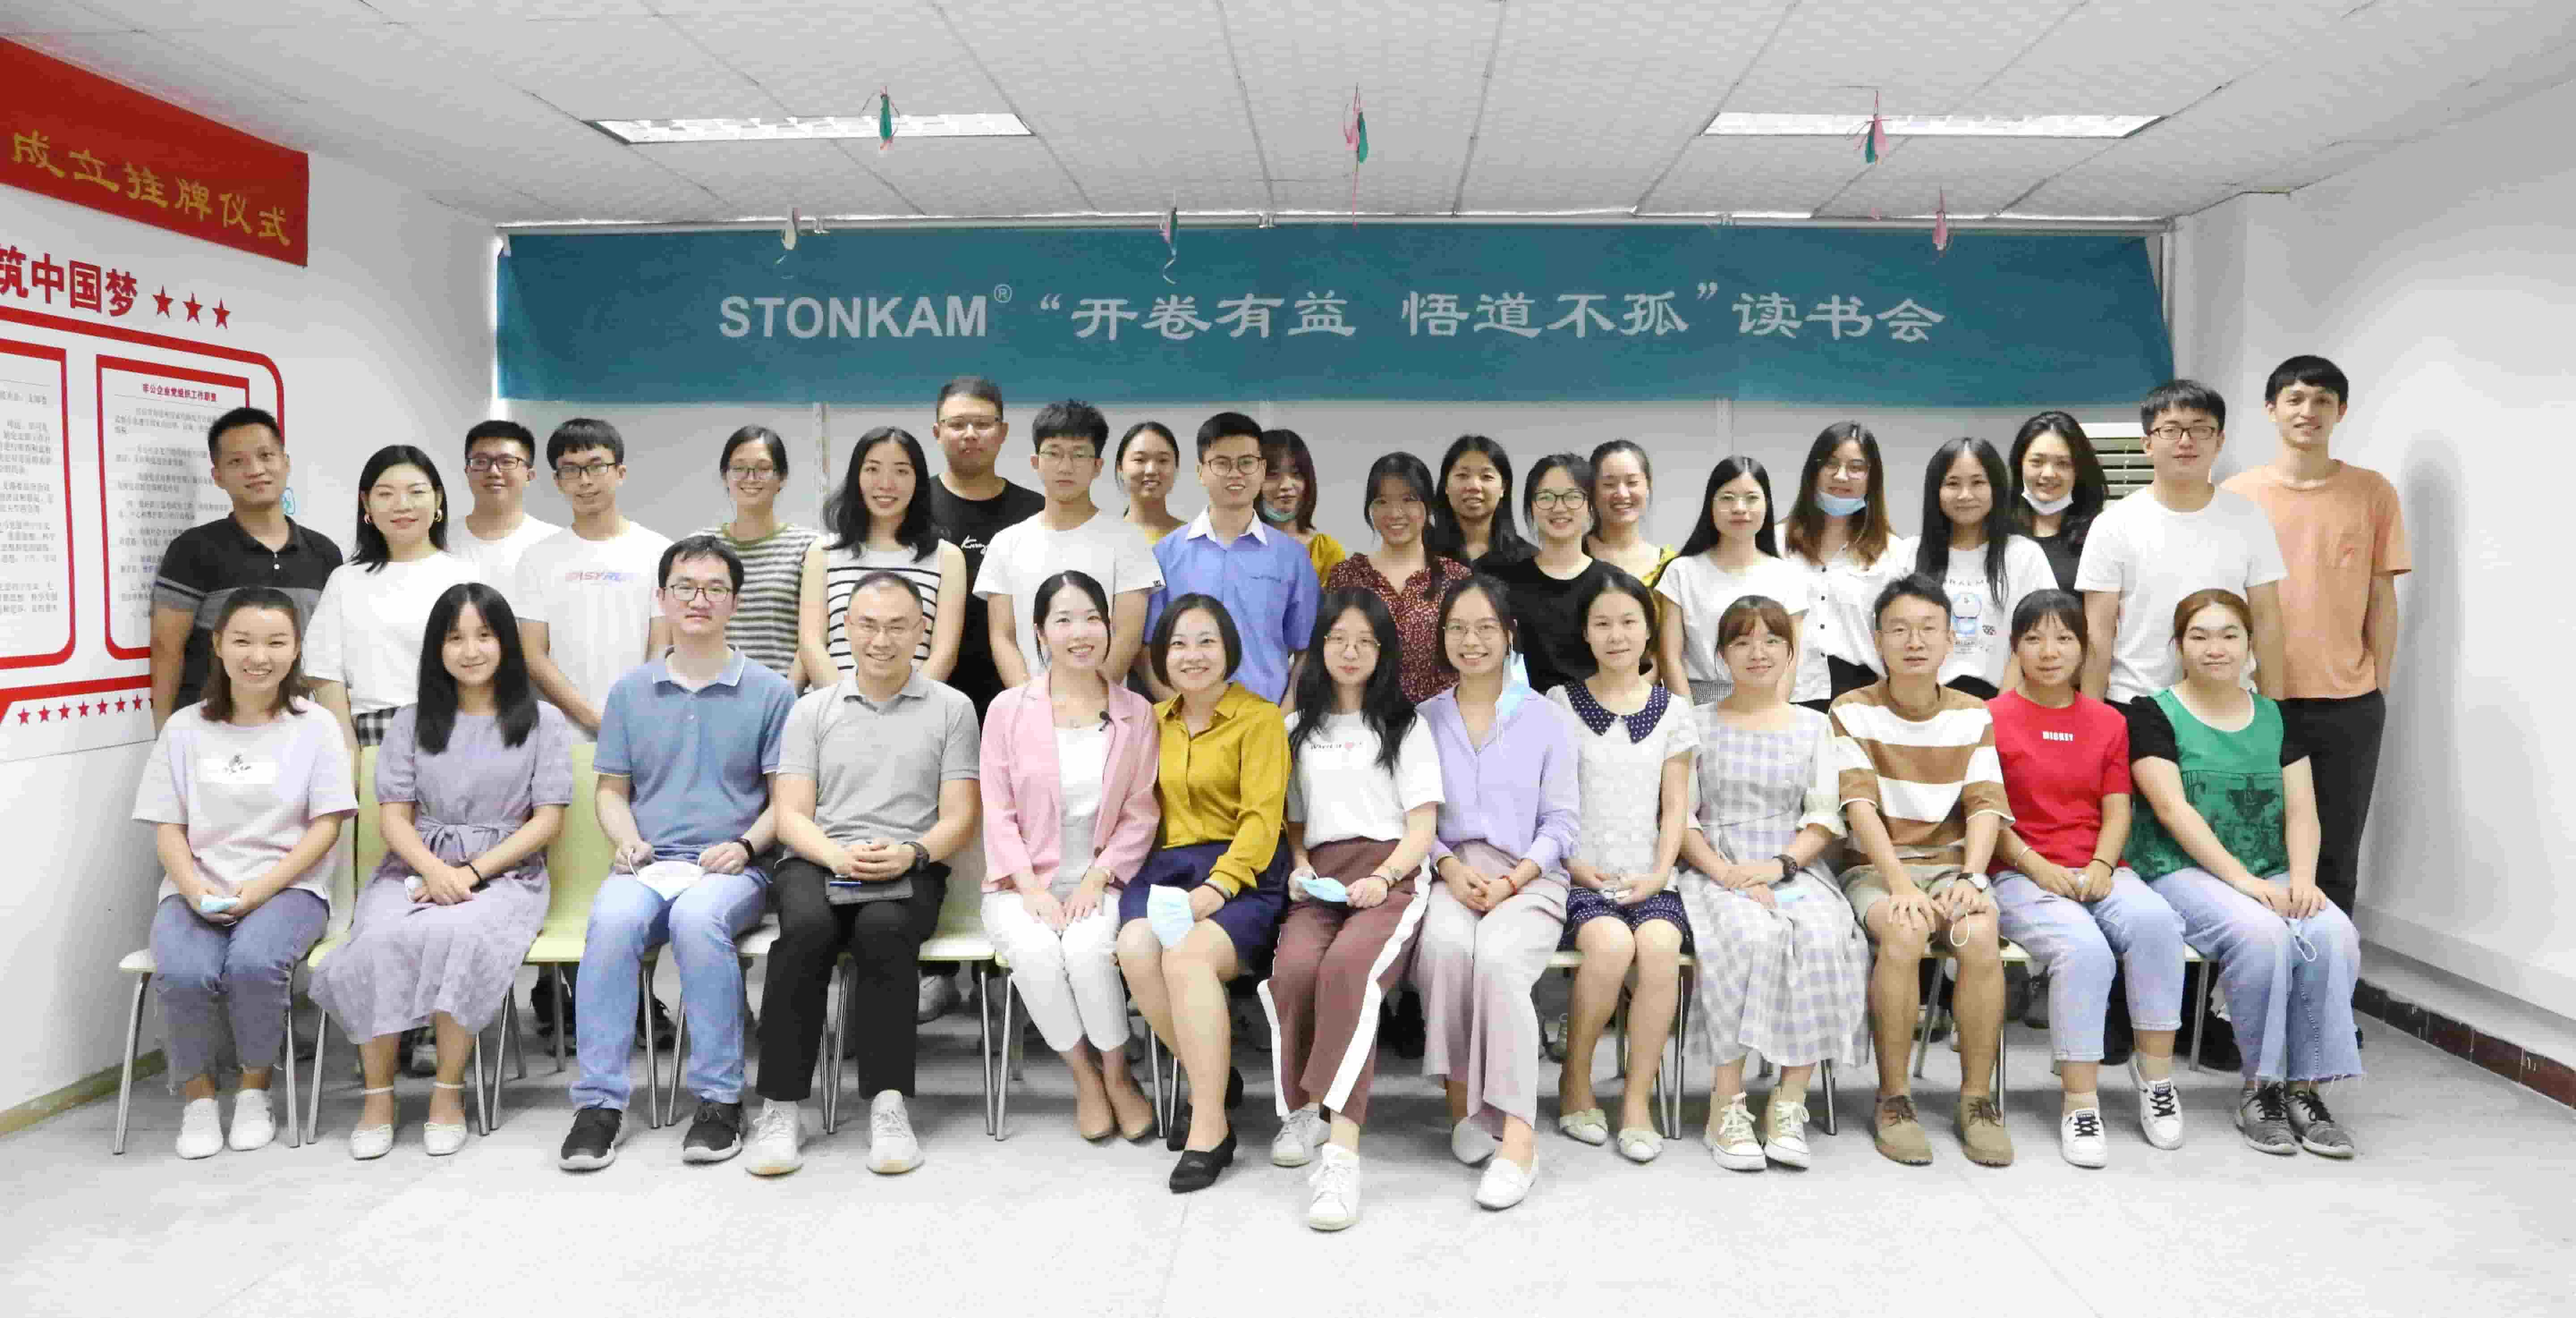 La primera reunión de intercambio de lecturas de STONKAM se celebró con éxito